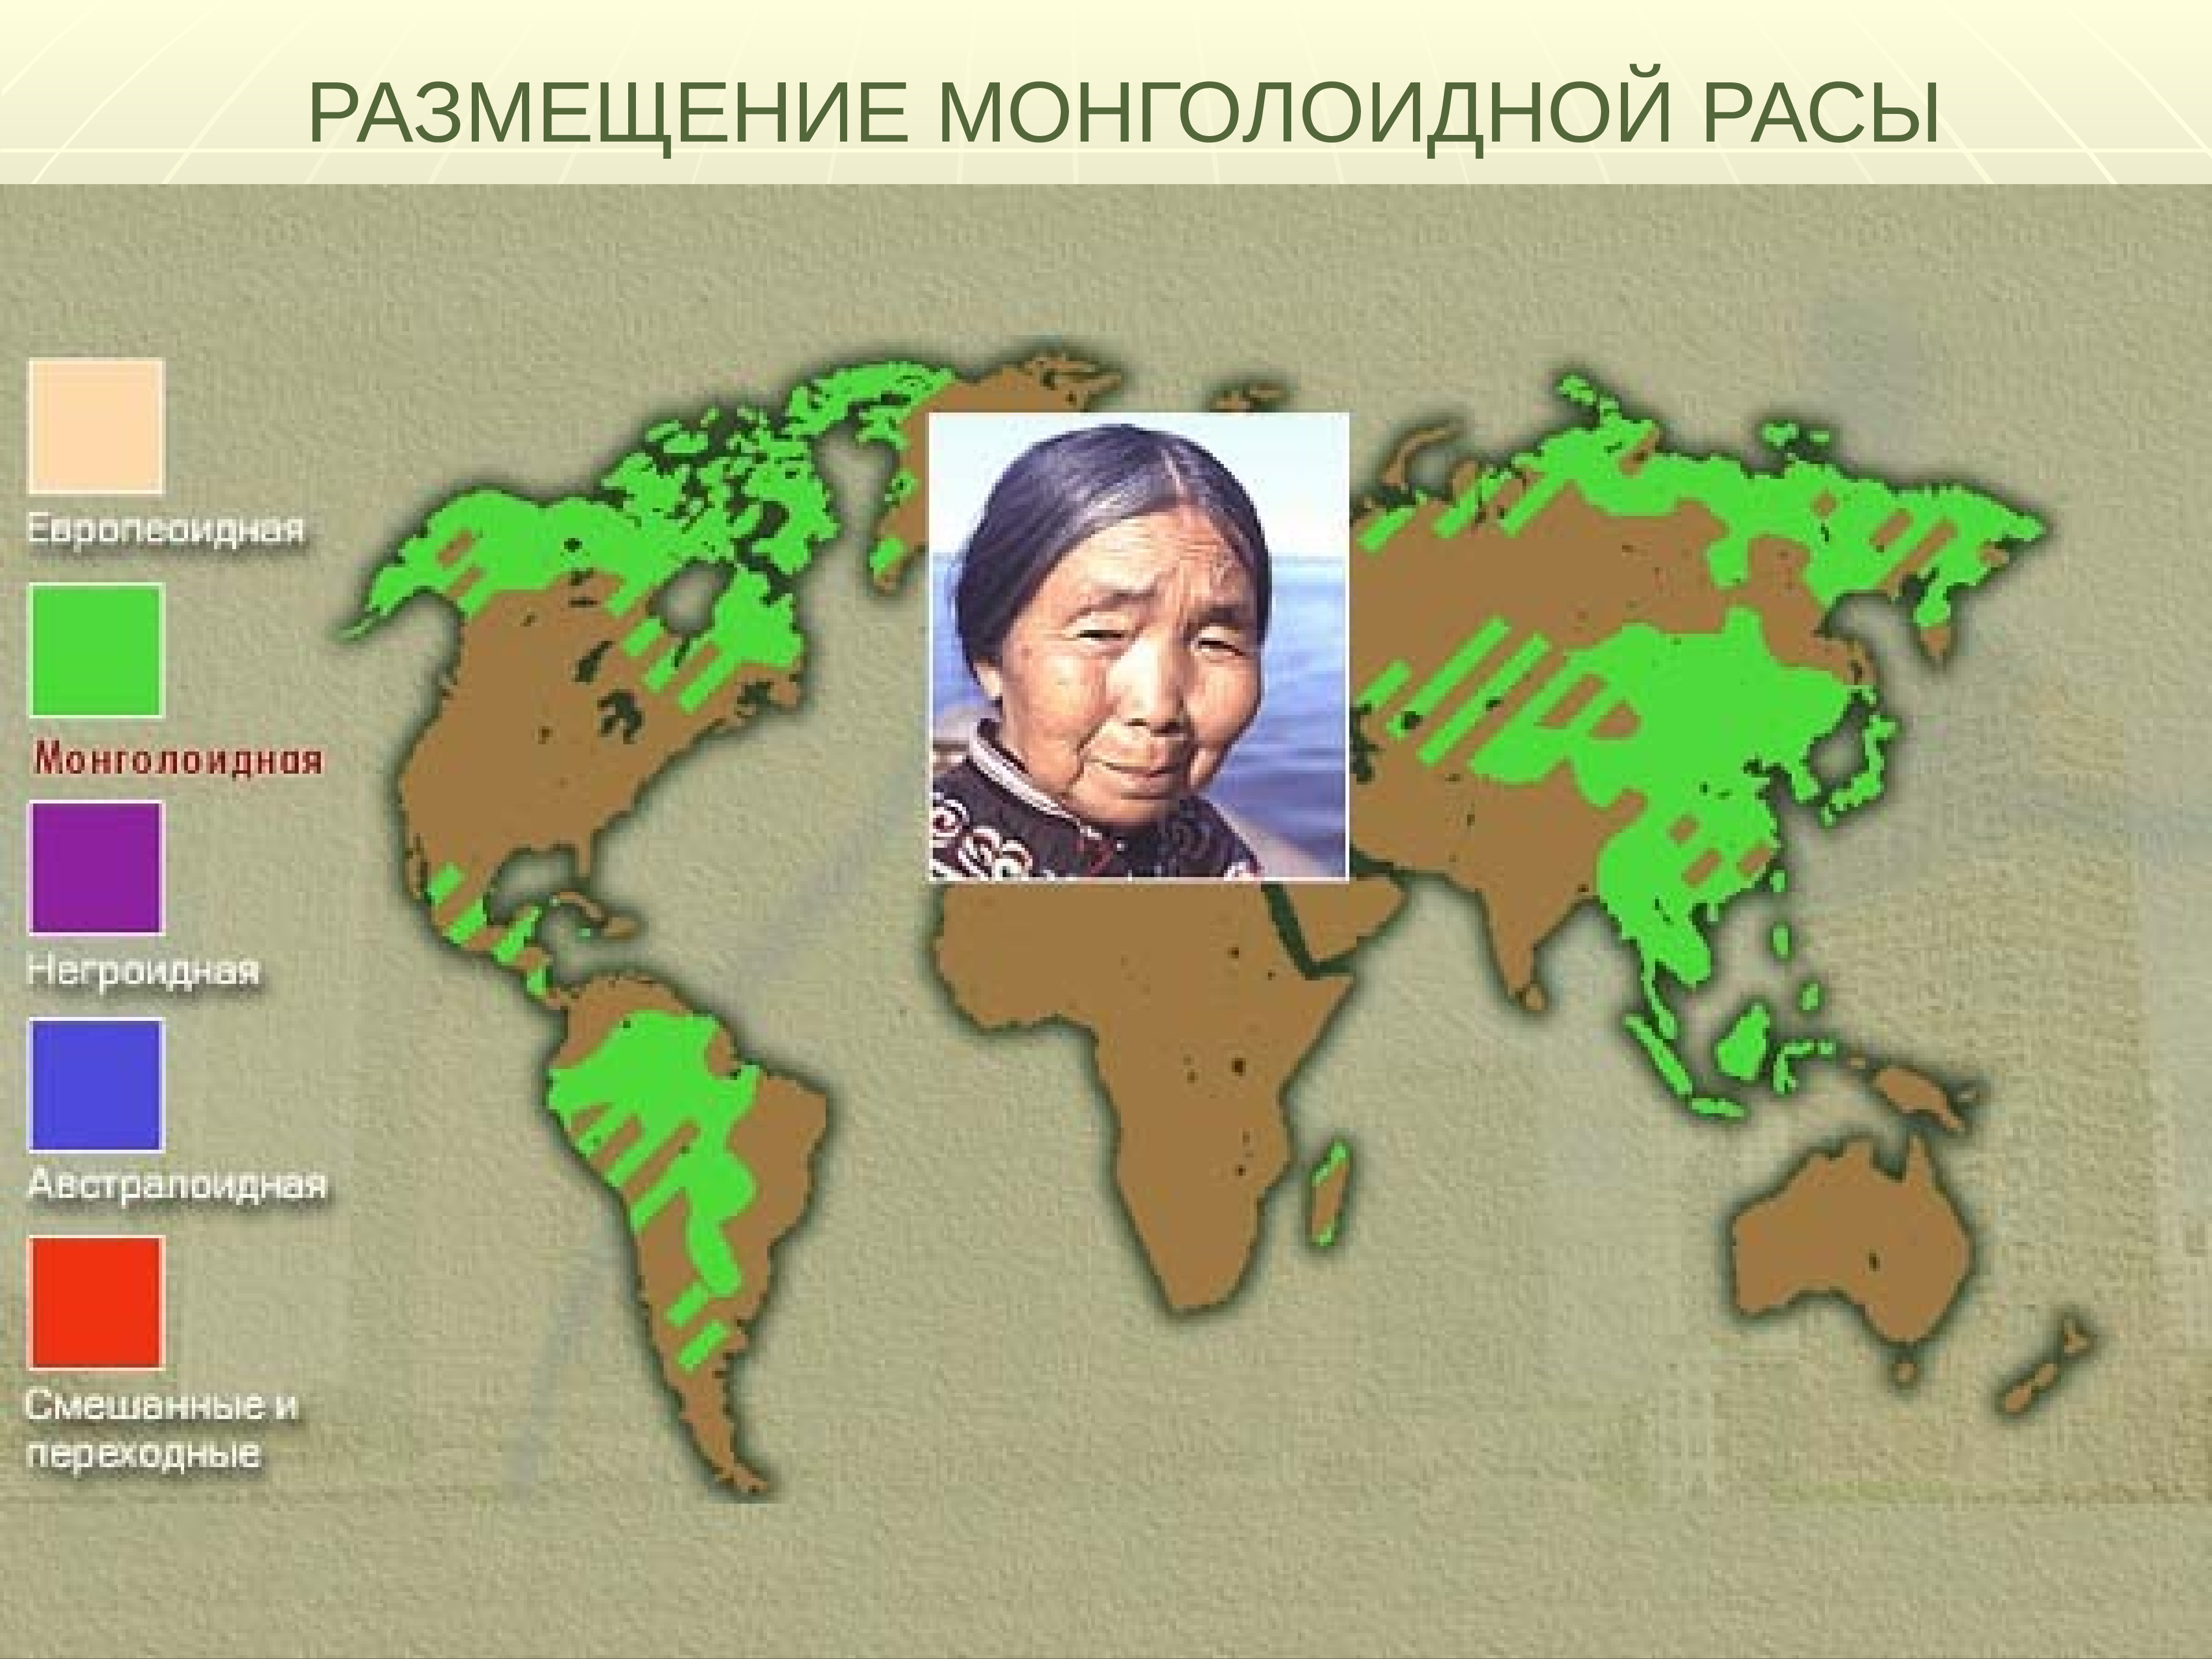 Какая раса в северной америке. Ареал обитания монголоидной расы. Первоначальный ареал монголоидной расы. Ареалмонголоилной расв. Размещение монголоидной расы.